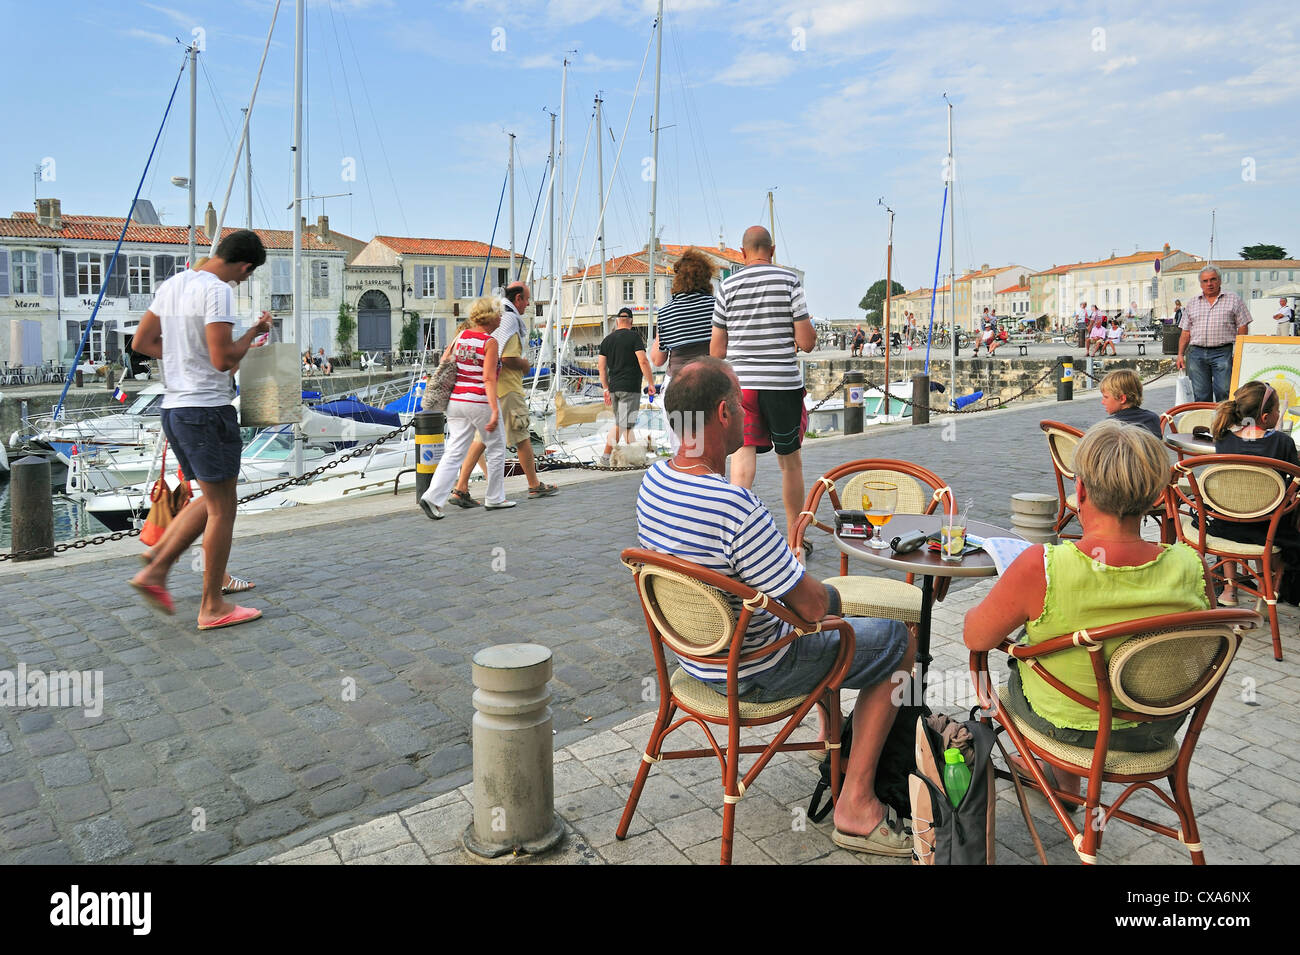 Tourists at pavement cafe in the port at Saint-Martin-de-Ré on the island Ile de Ré, Charente Maritime, France Stock Photo